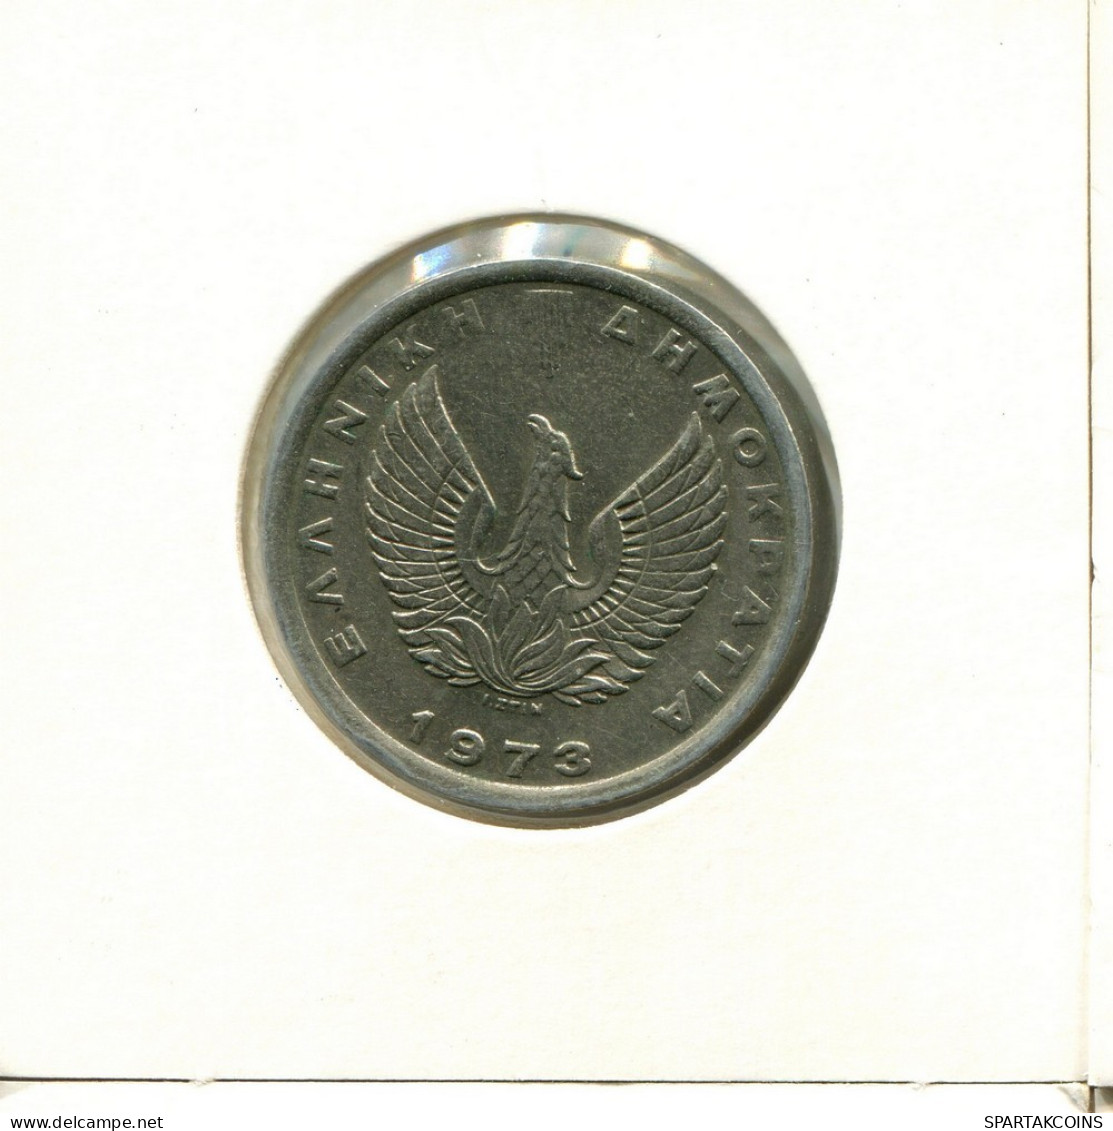 5 DRACHMES 1973 GRECIA GREECE Moneda #AY343.E.A - Griechenland